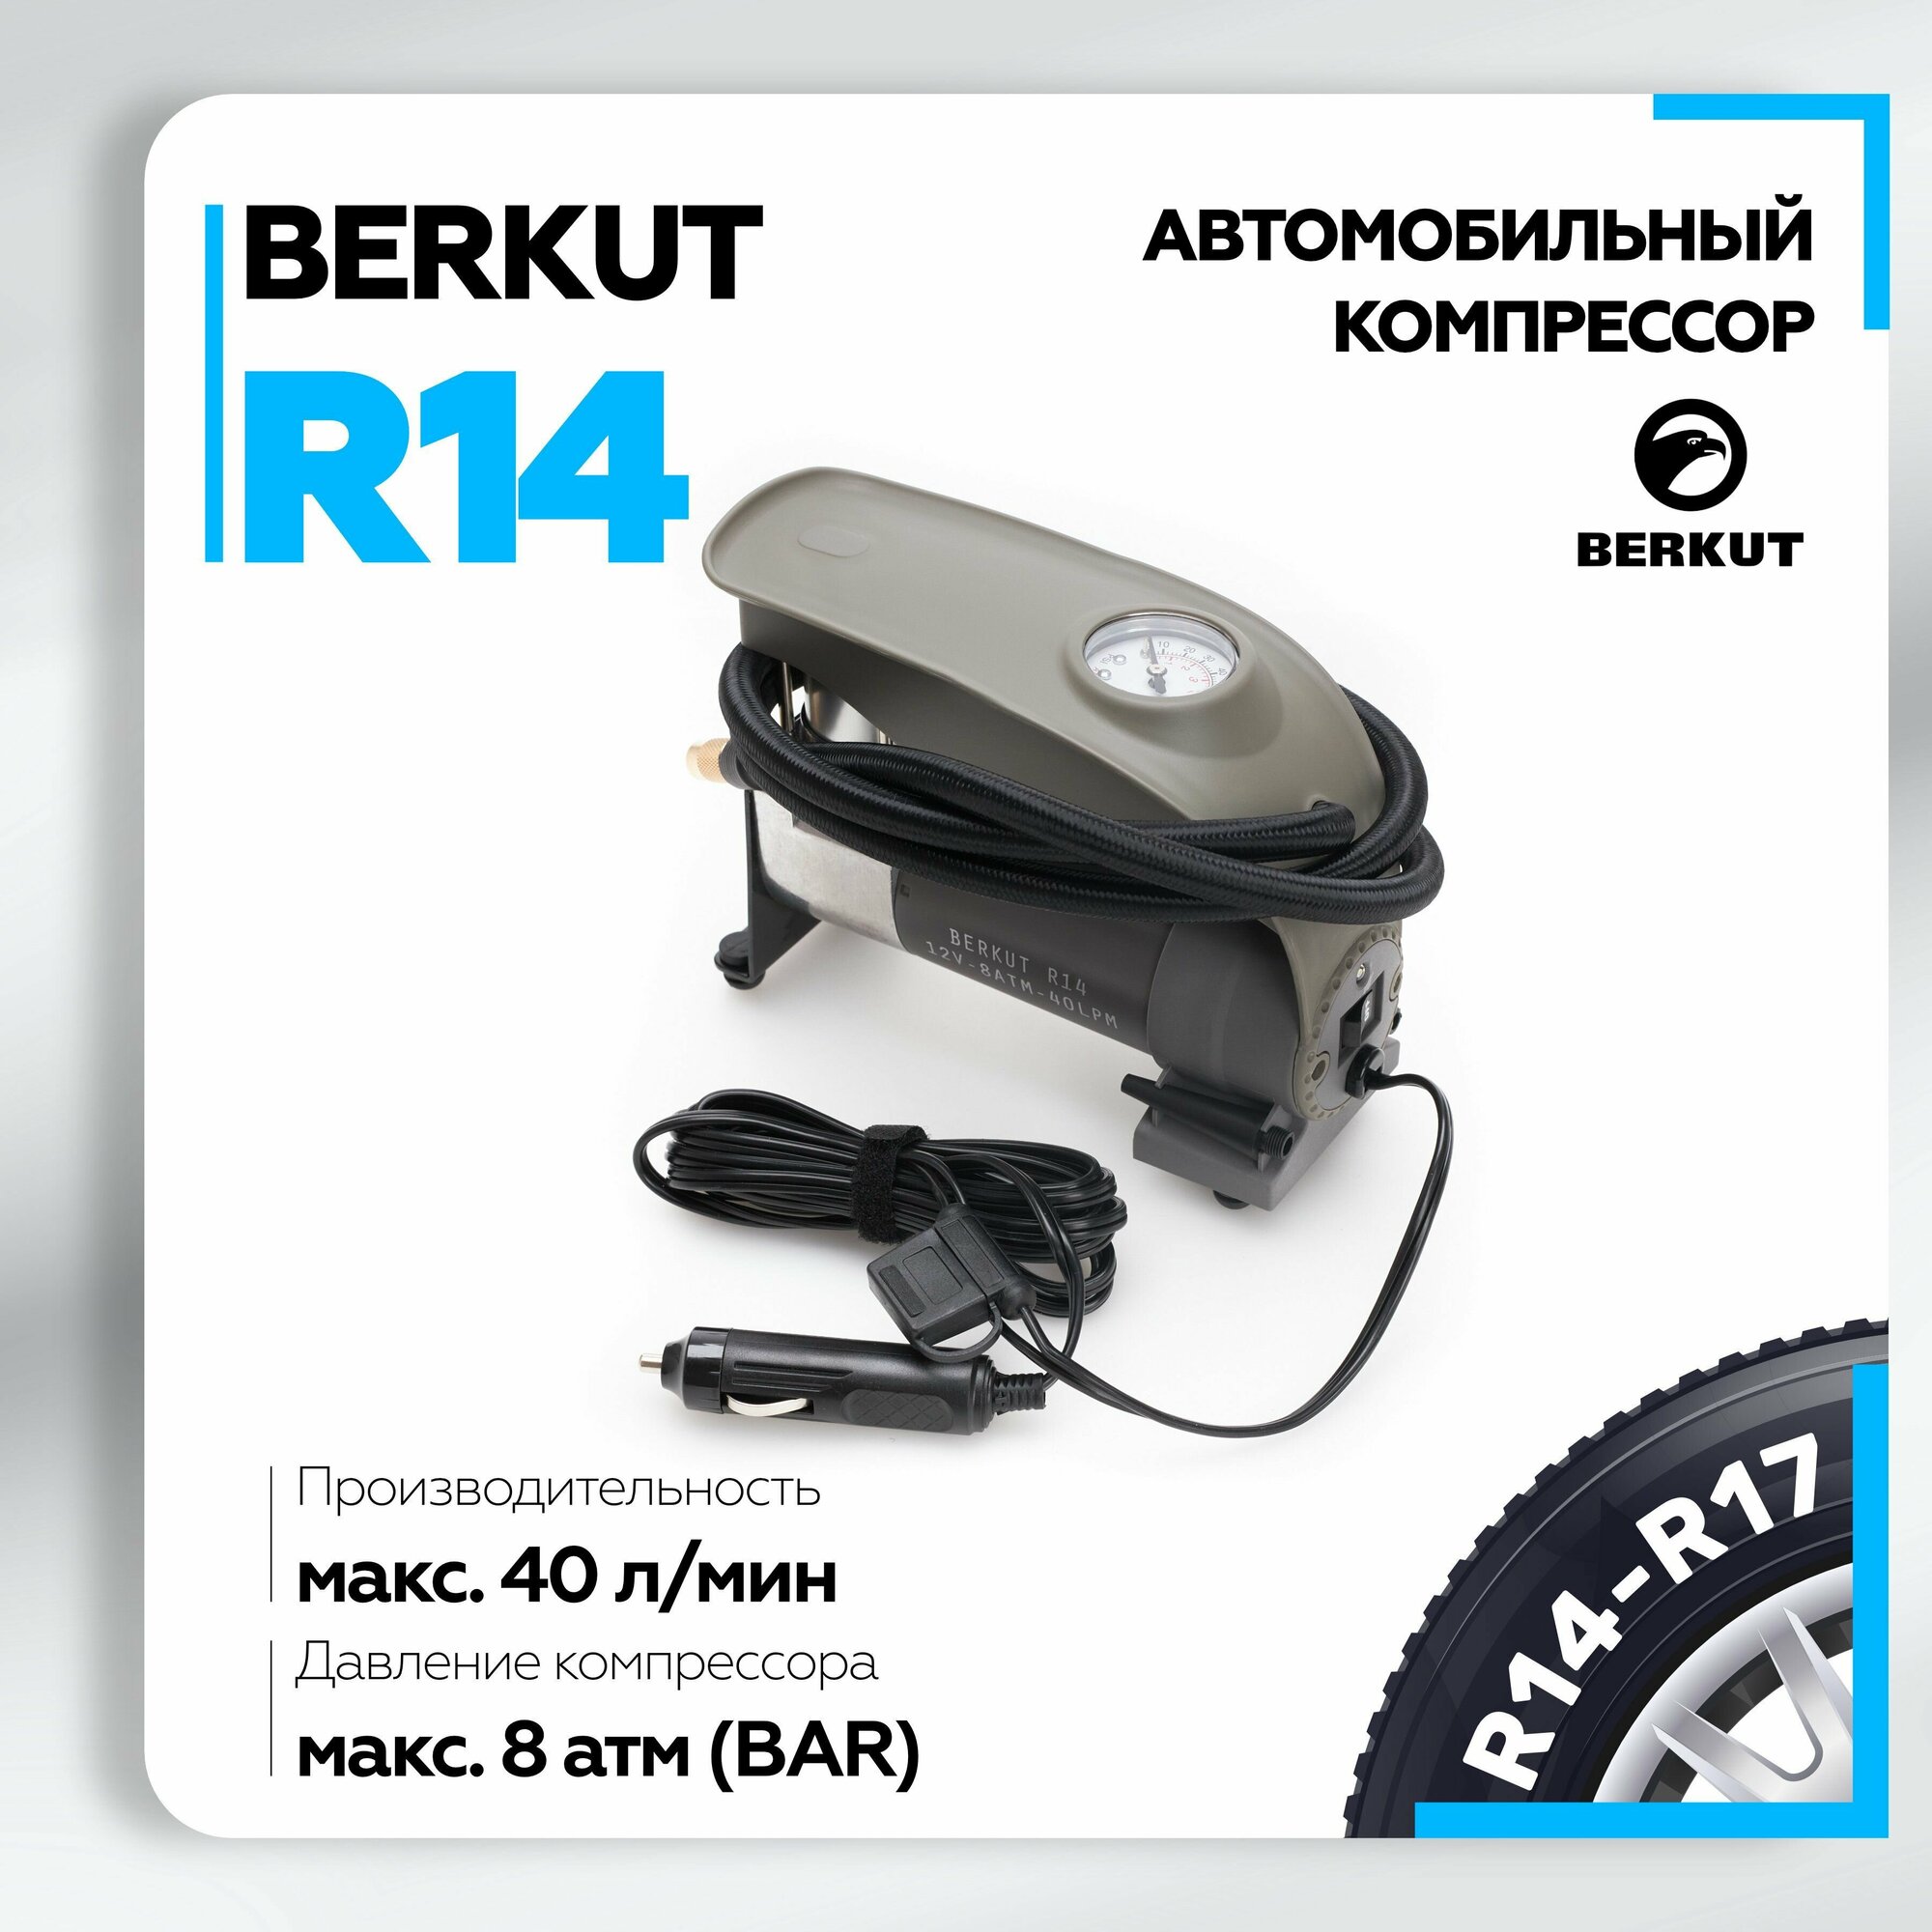 Автомобильный компрессор Berkut R14